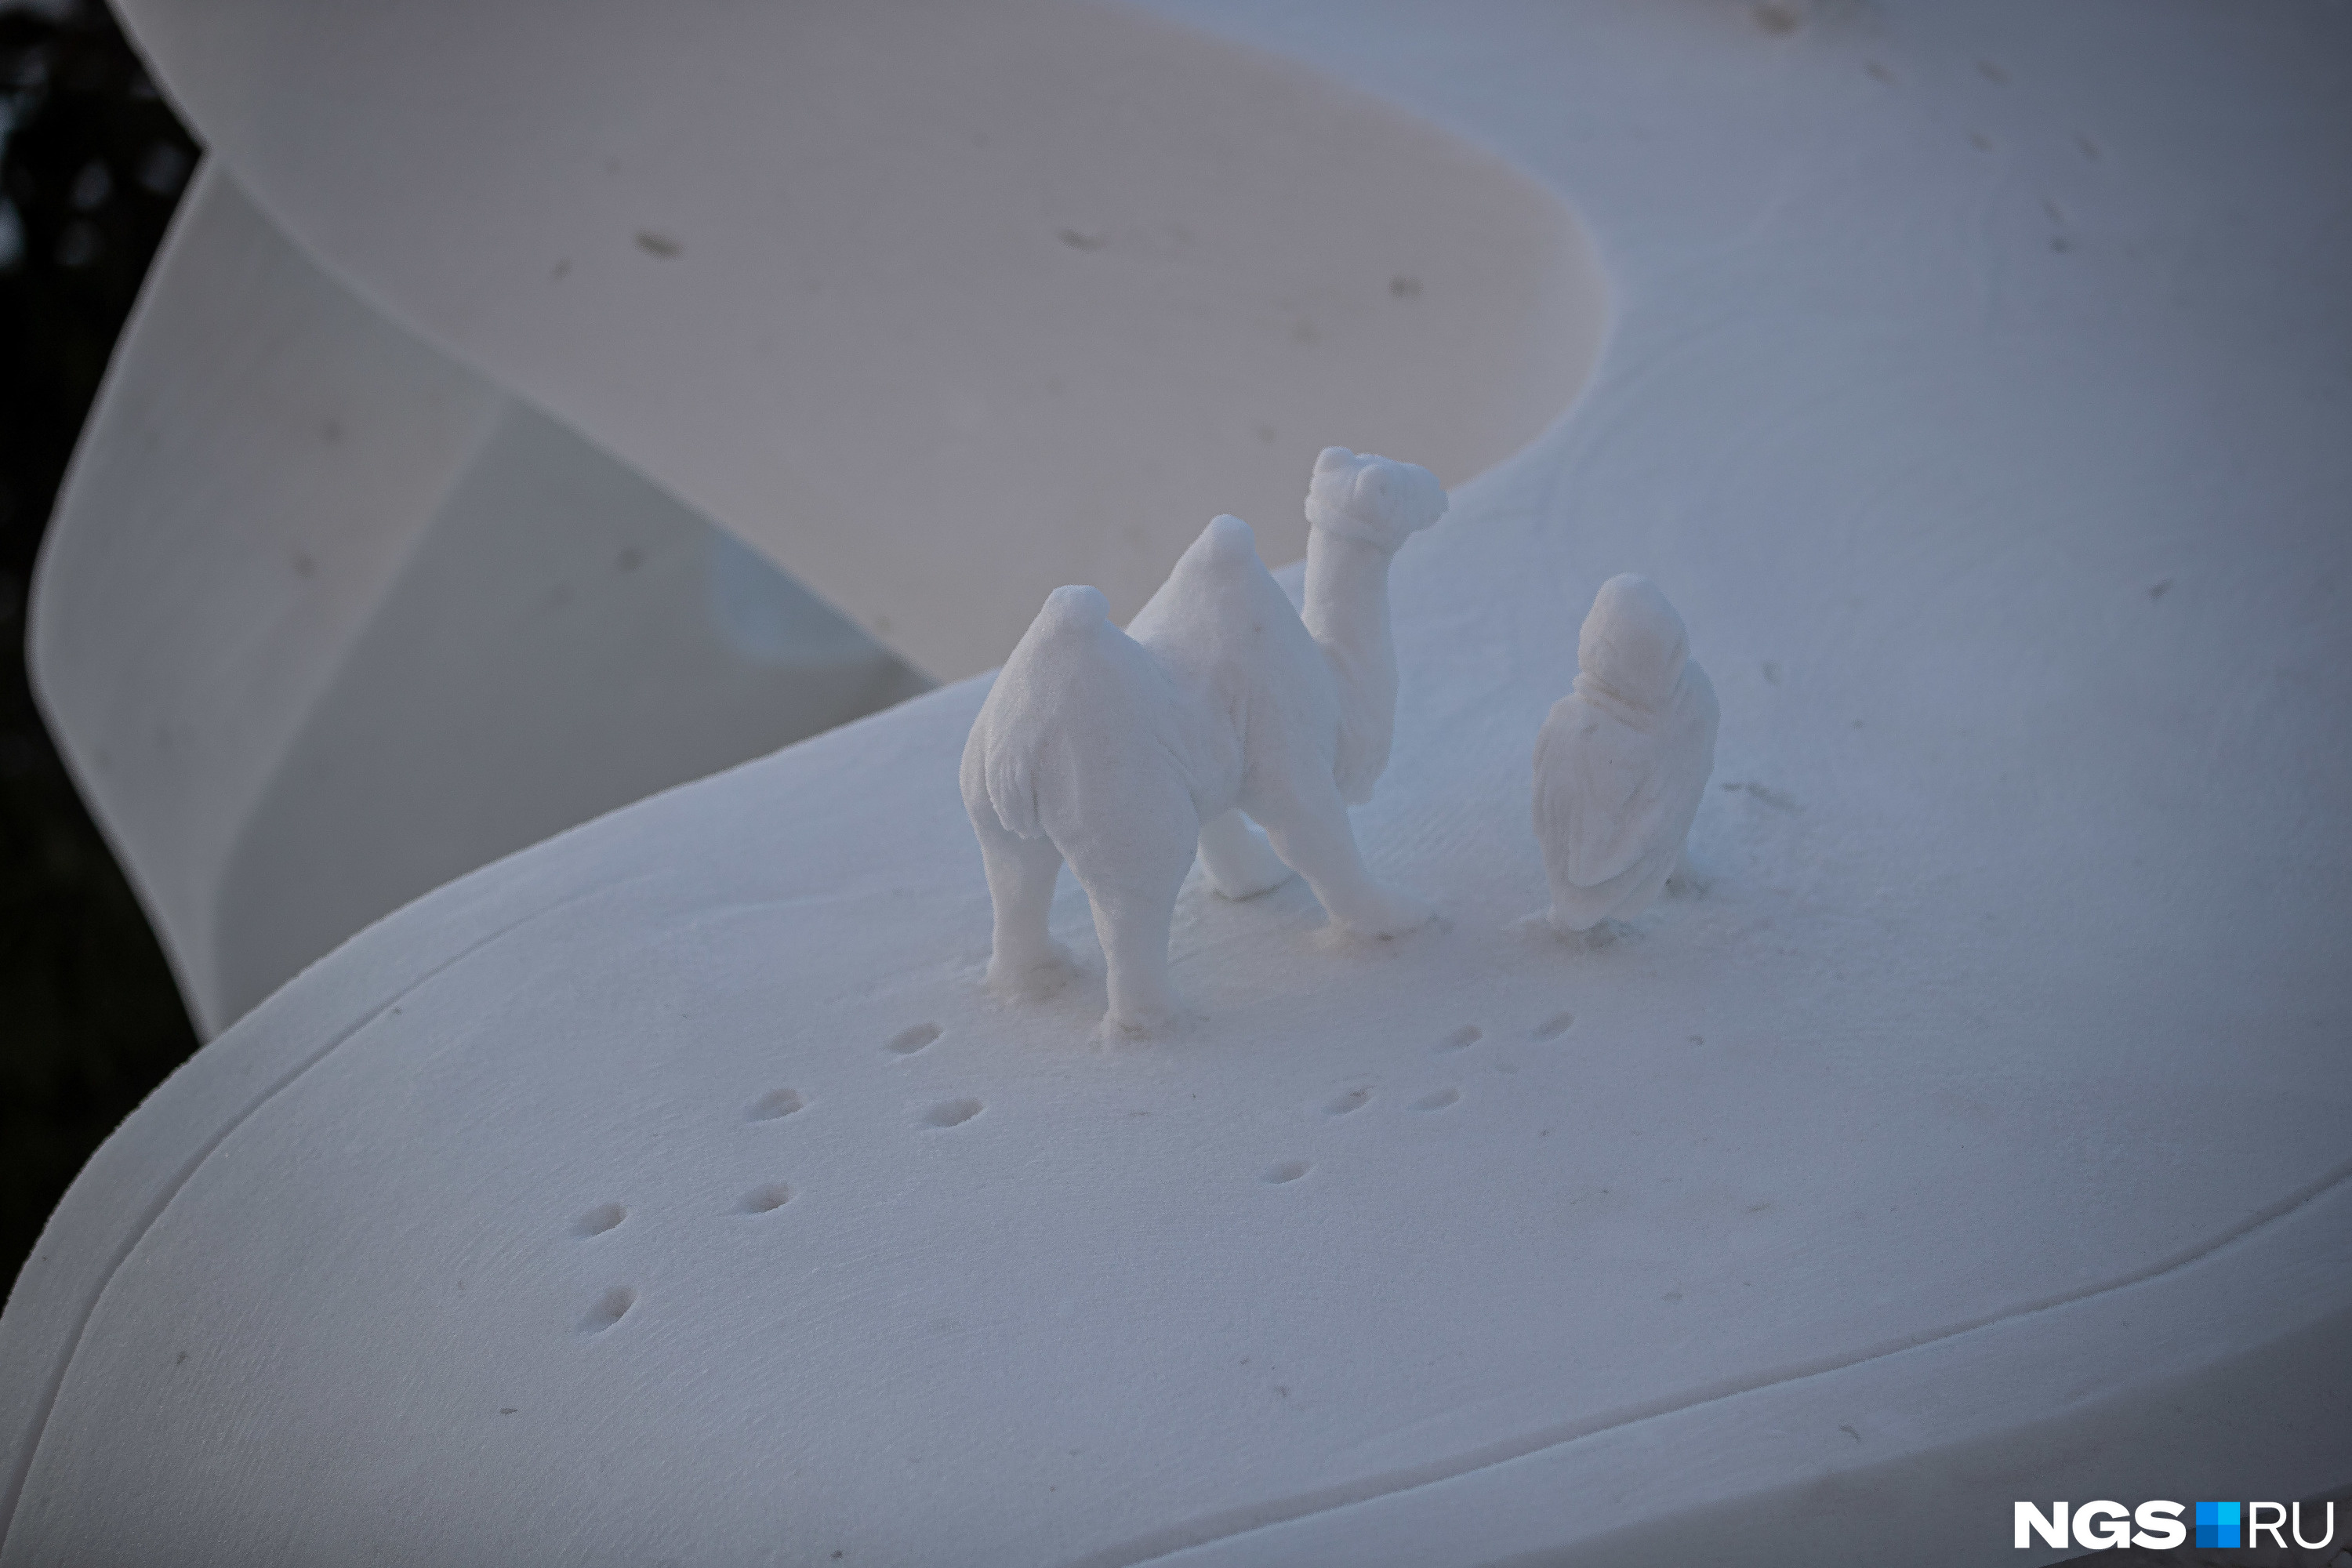 Пока не начались снегопады, можно рассмотреть мельчайшие элементы: например, следы верблюда